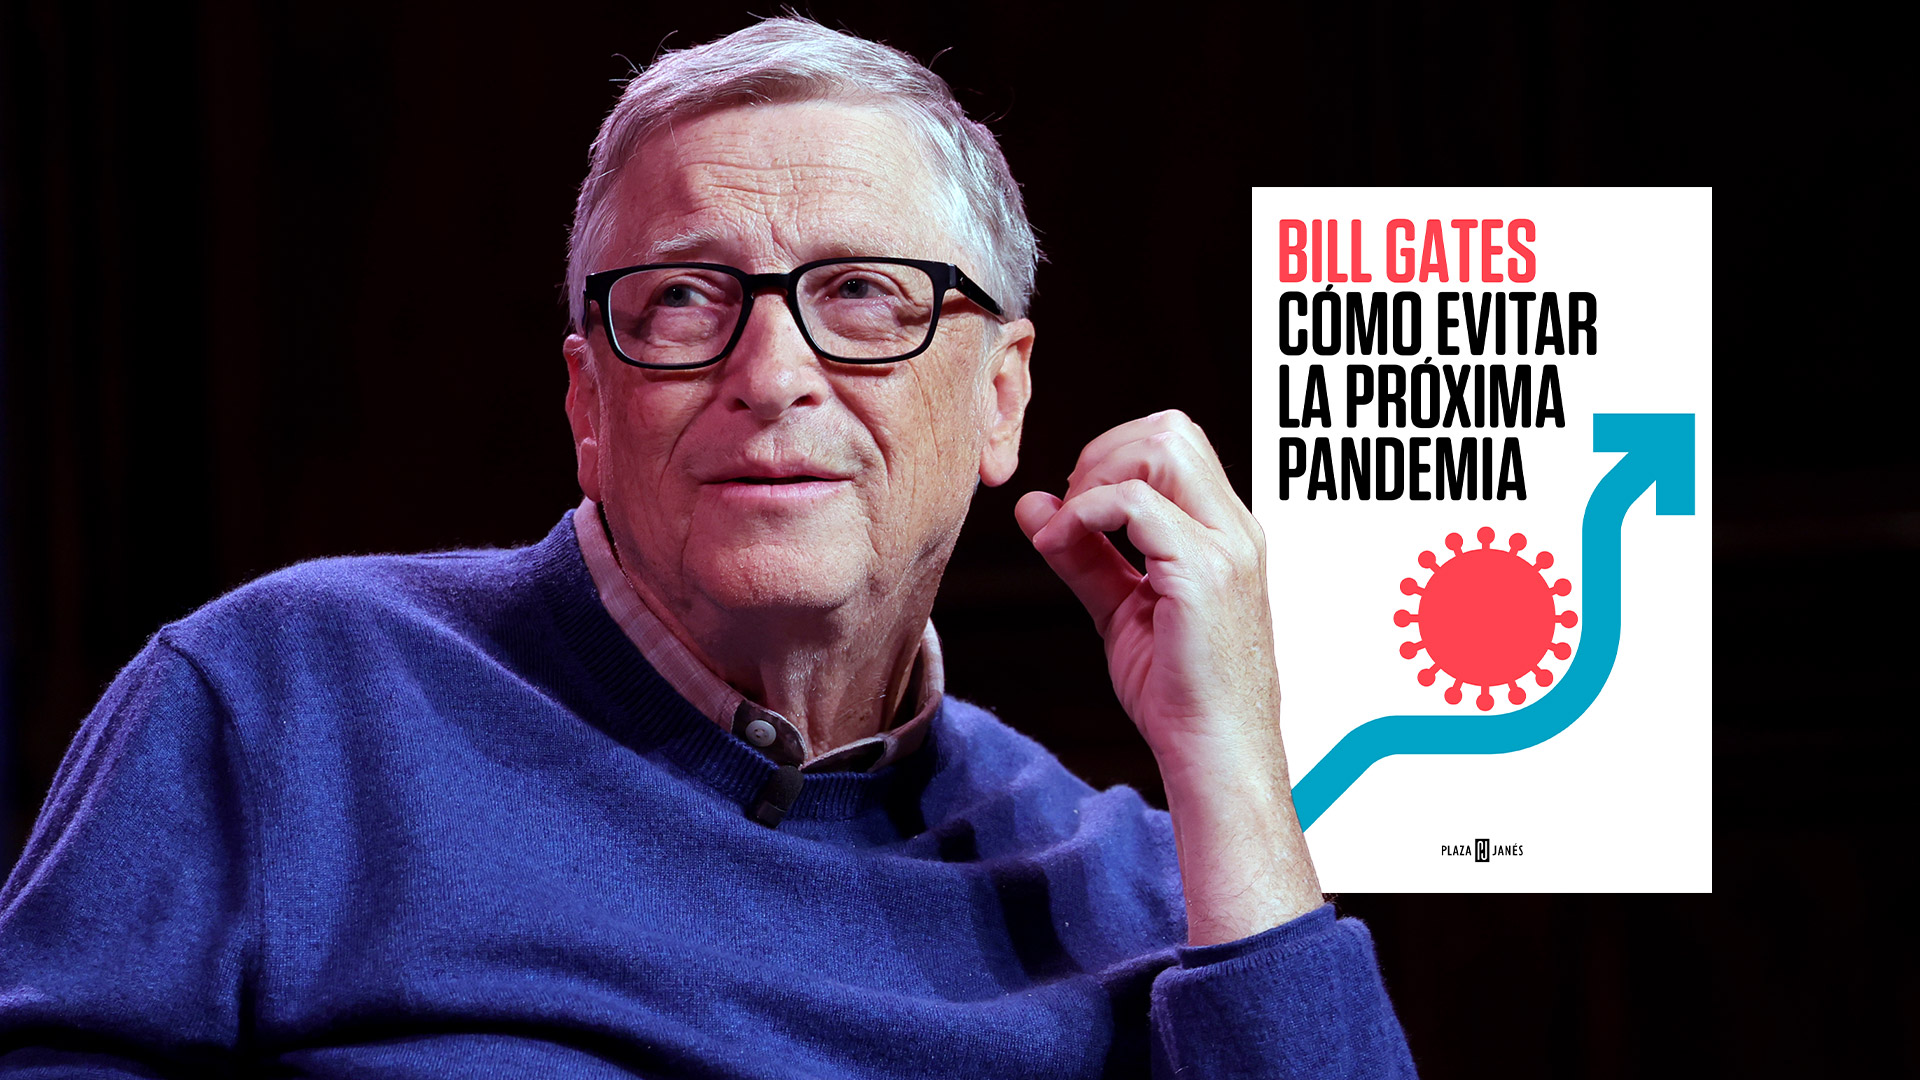 “Podría ser más letal y contagiosa”: Bill Gates explica cómo evitar la próxima pandemia en un libro; aquí se puede empezar a leerlo